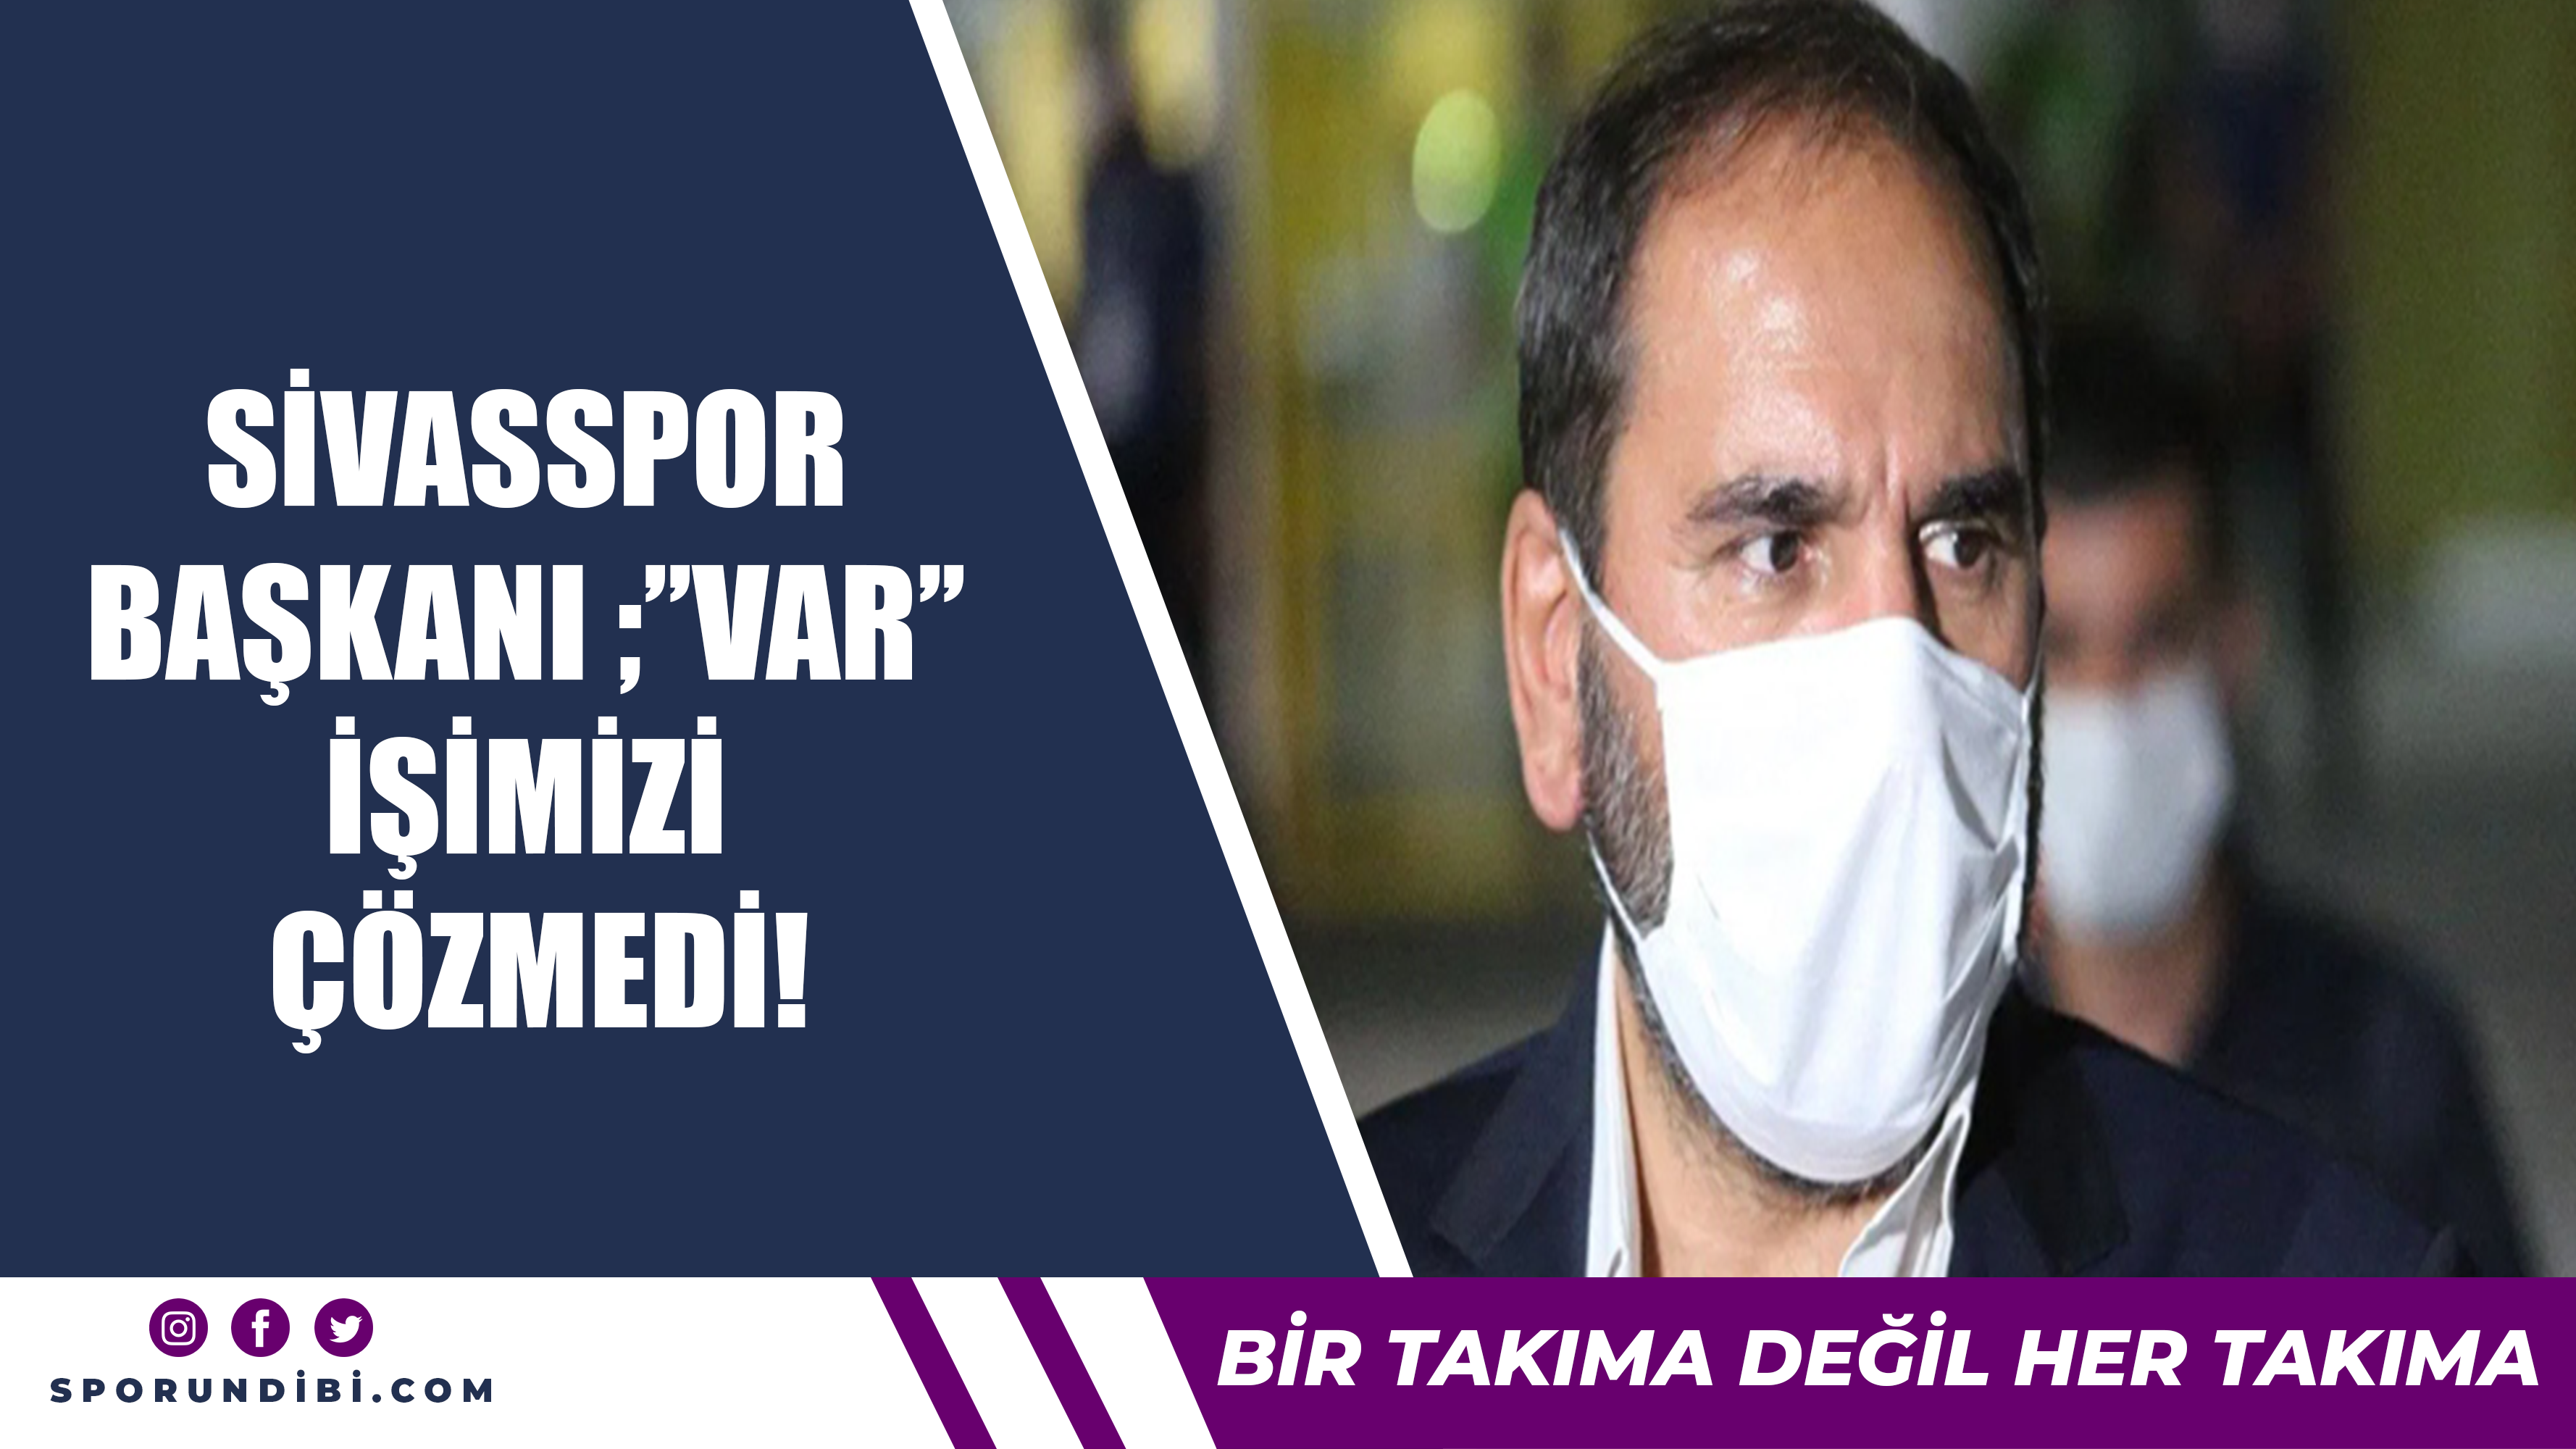 Sivasspor Başkanından olay açıklama "VAR işimizi çözmedi iptal etsinler"